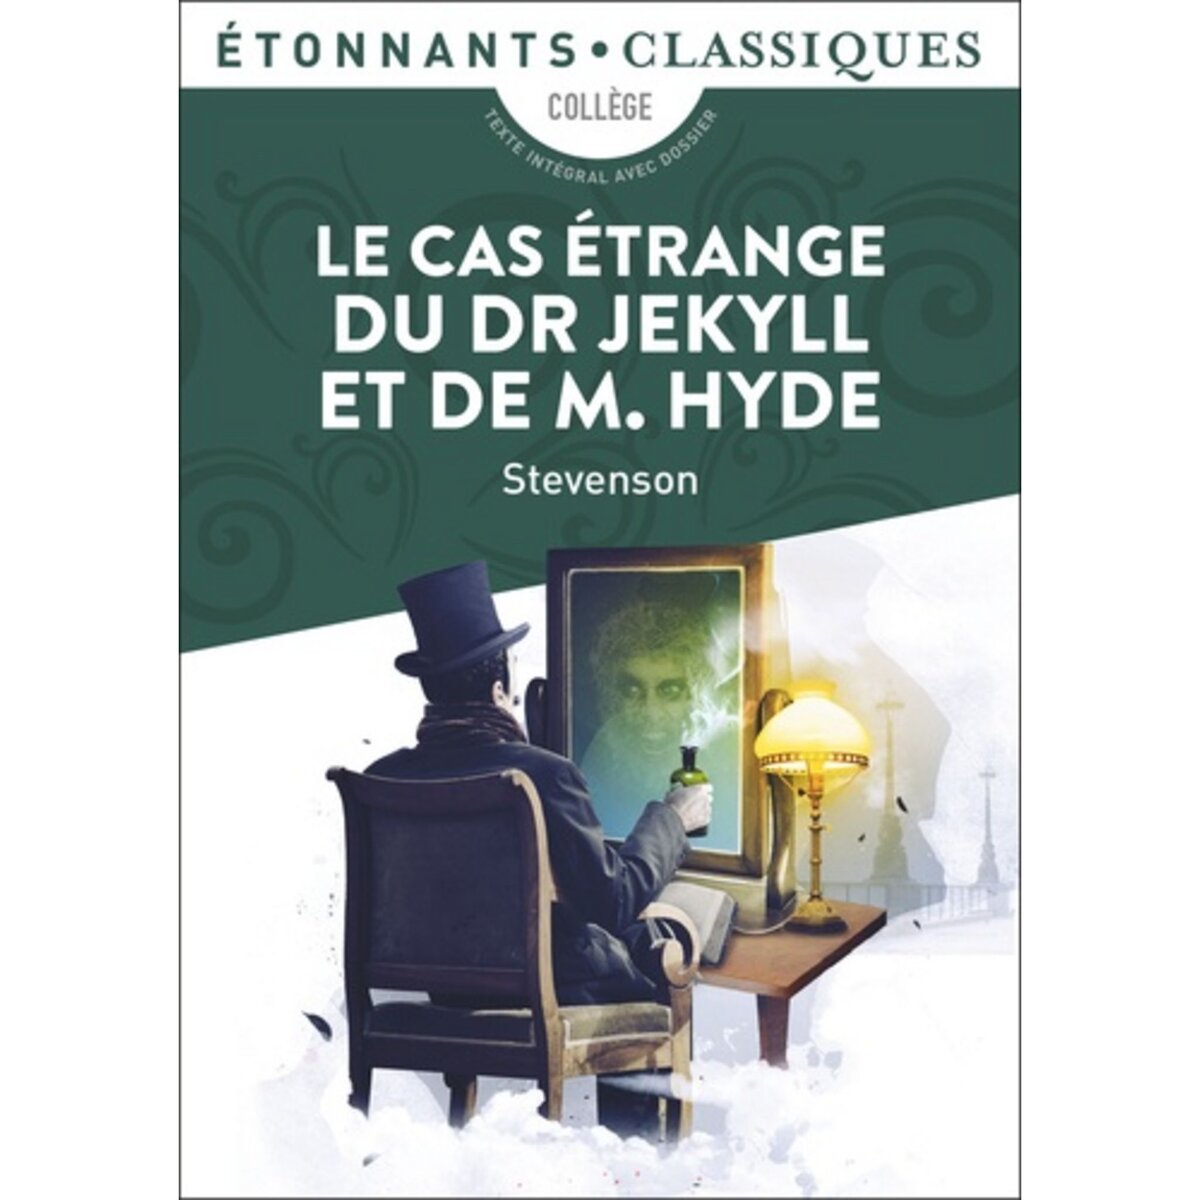  LE CAS ETRANGE DU DR JEKYLL ET DE M. HYDE, Stevenson Robert Louis